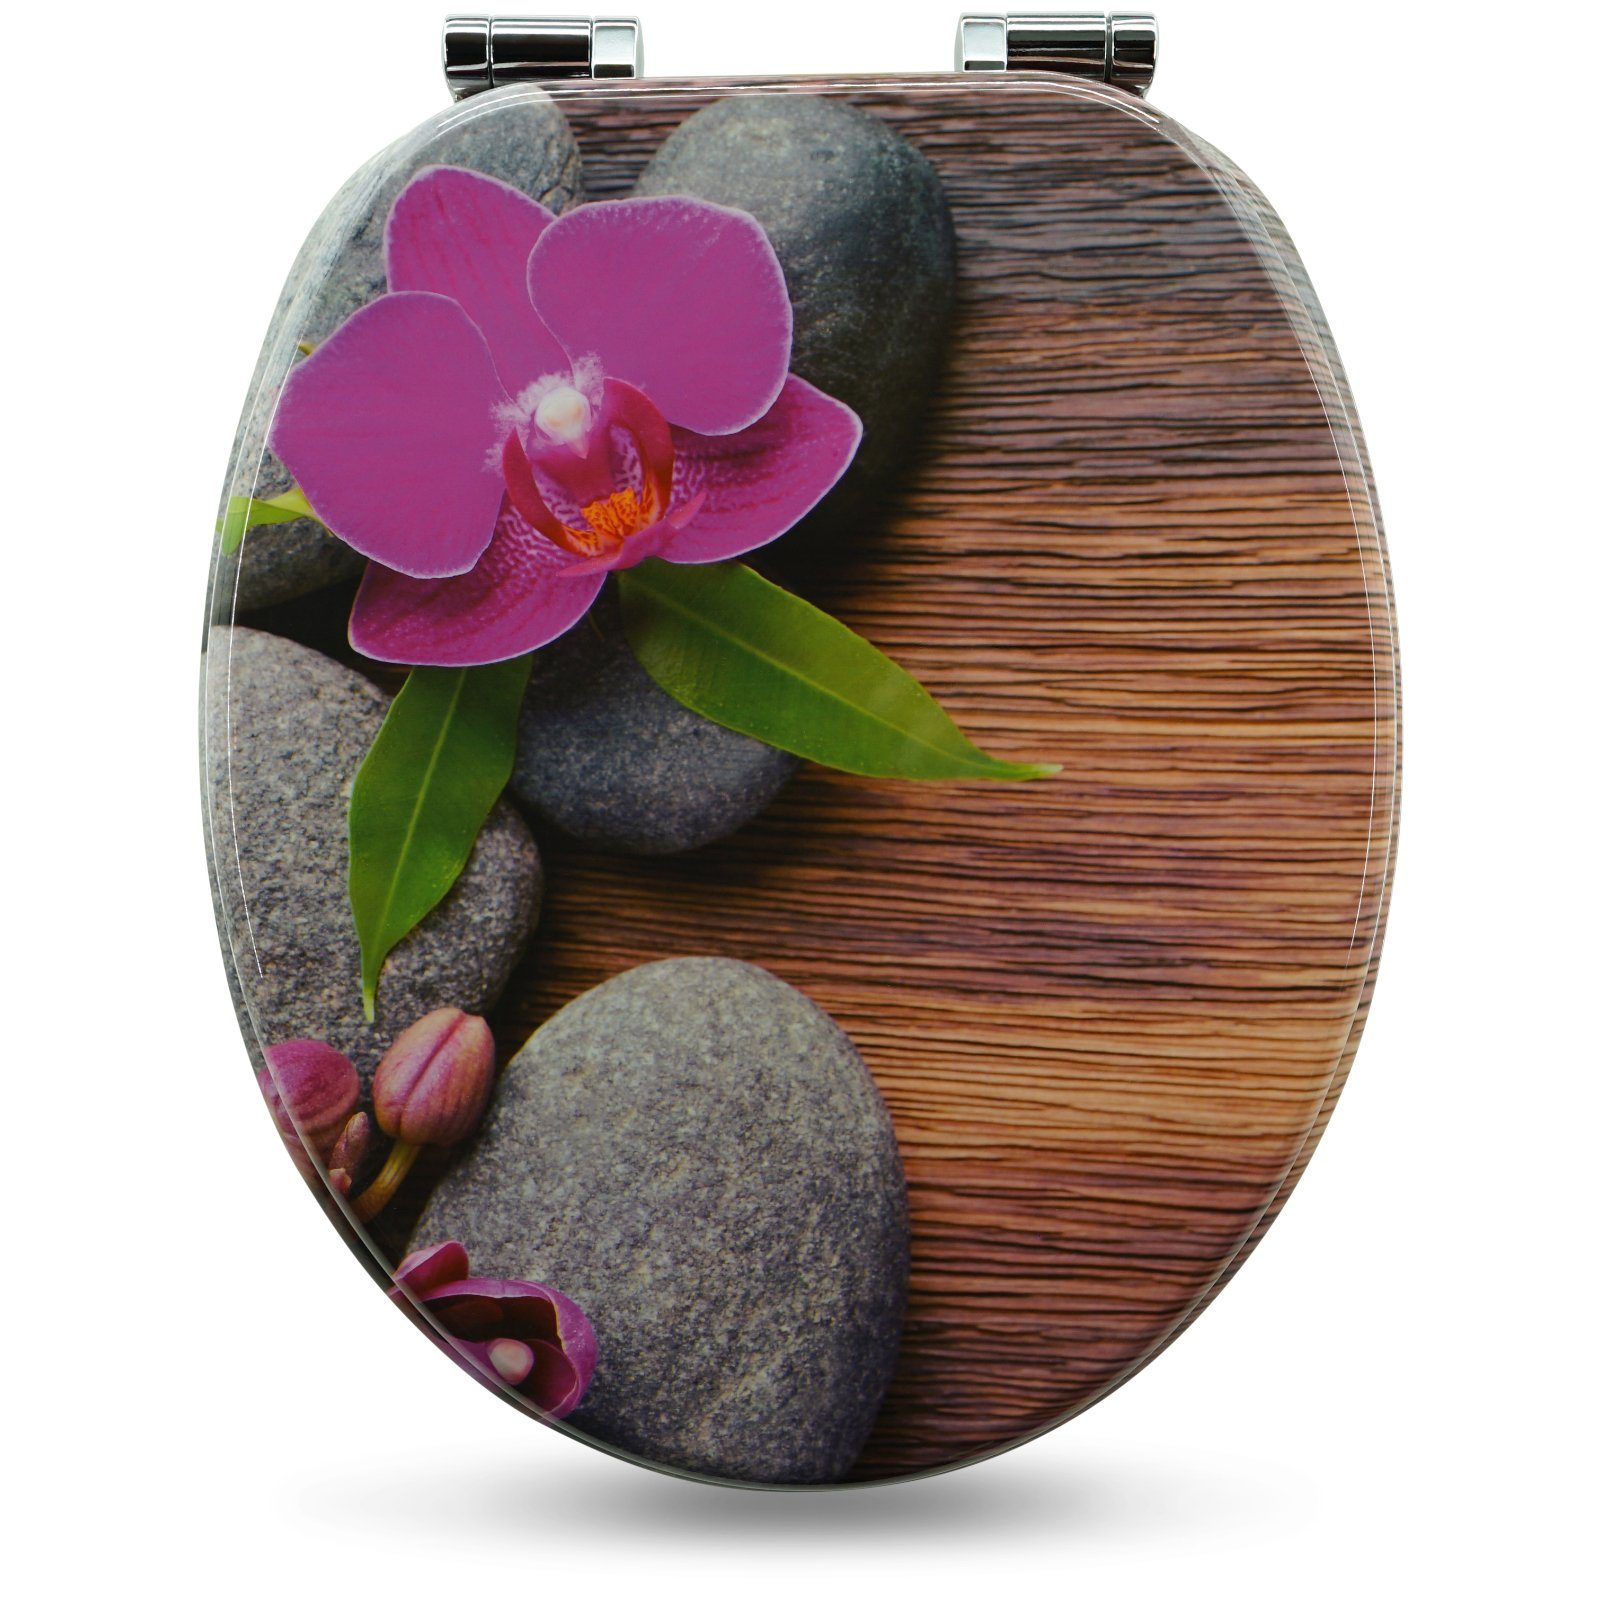 Sanfino WC-Sitz "Orchid" Premium Toilettendeckel mit Absenkautomatik aus Holz, mit schönem Blumen-Motiv, hohem Sitzkomfort, einfache Montage